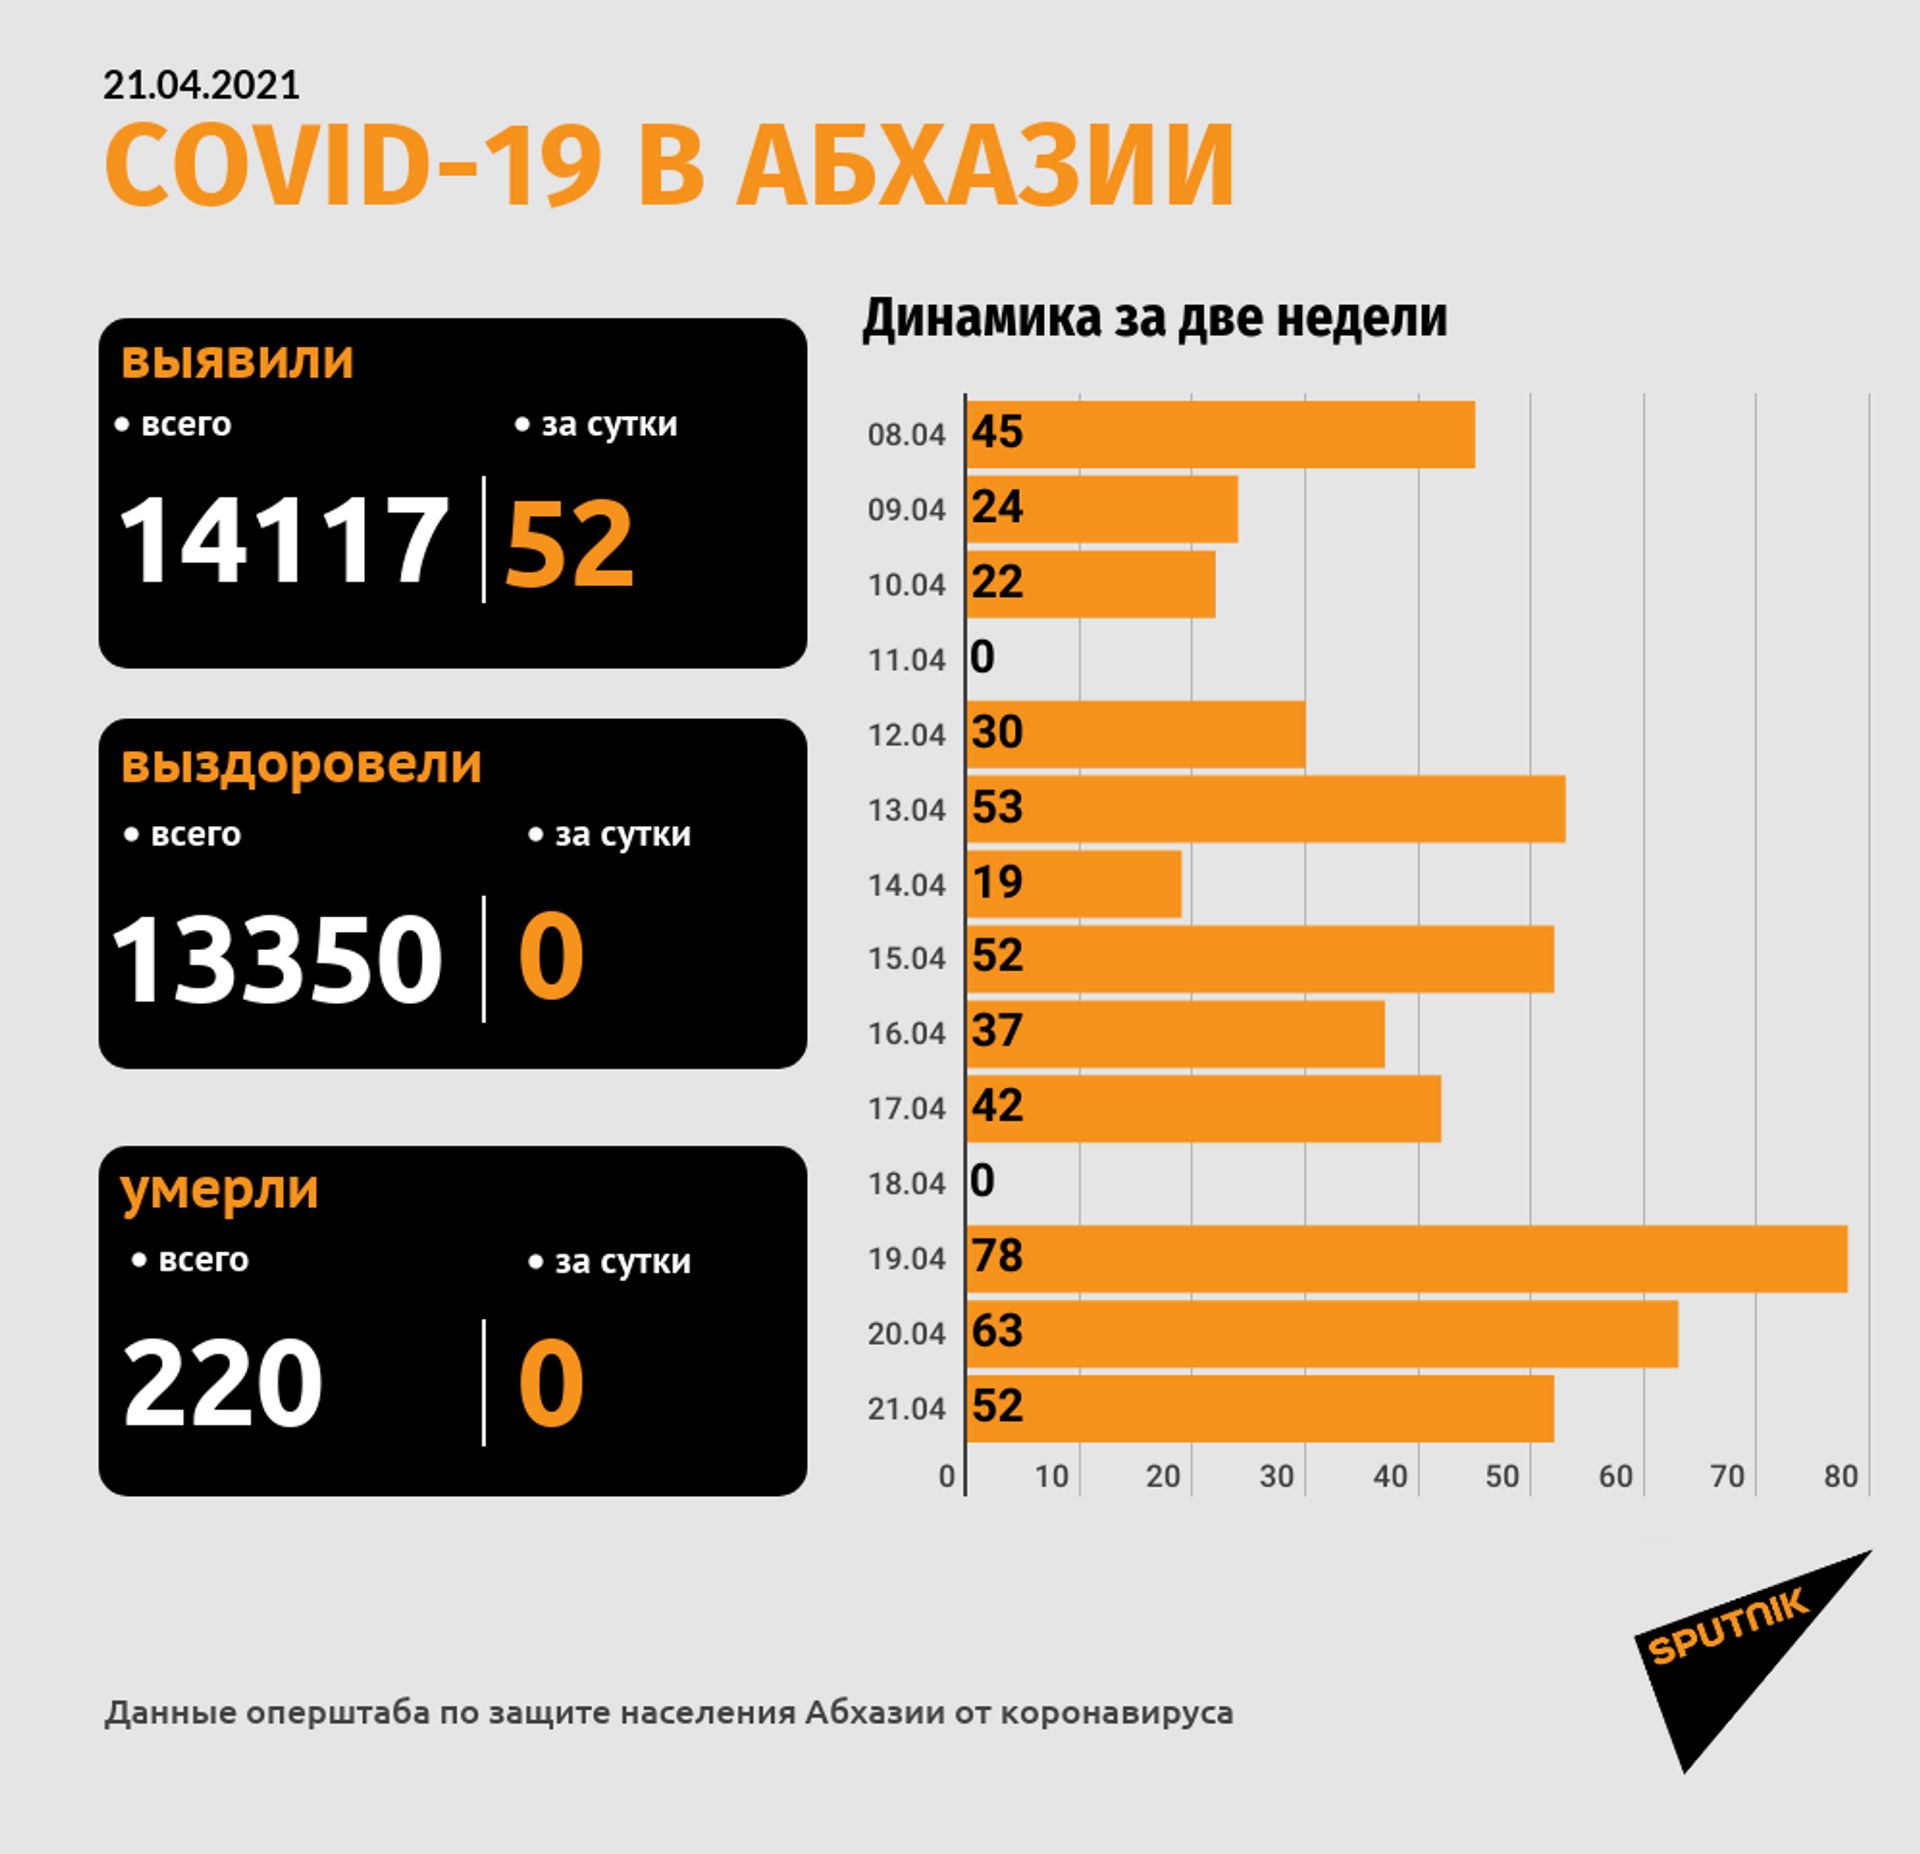 Еще 52 новых случая COVID-19 зафиксировано в Абхазии за сутки - Sputnik Абхазия, 1920, 21.04.2021